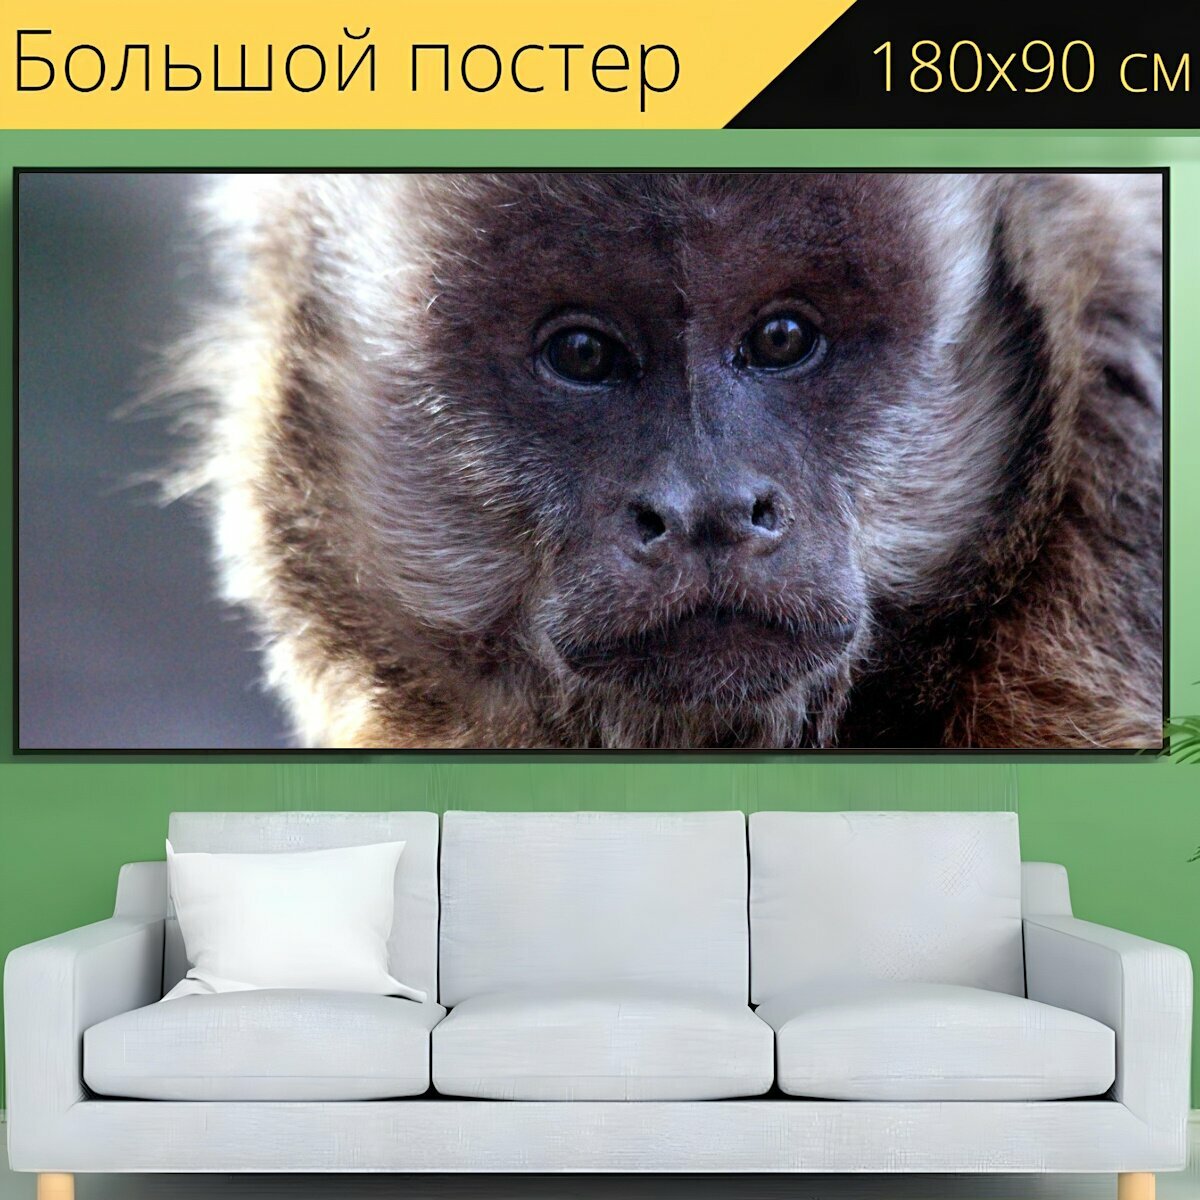 Большой постер "Капуцин примат обезьяна" 180 x 90 см. для интерьера